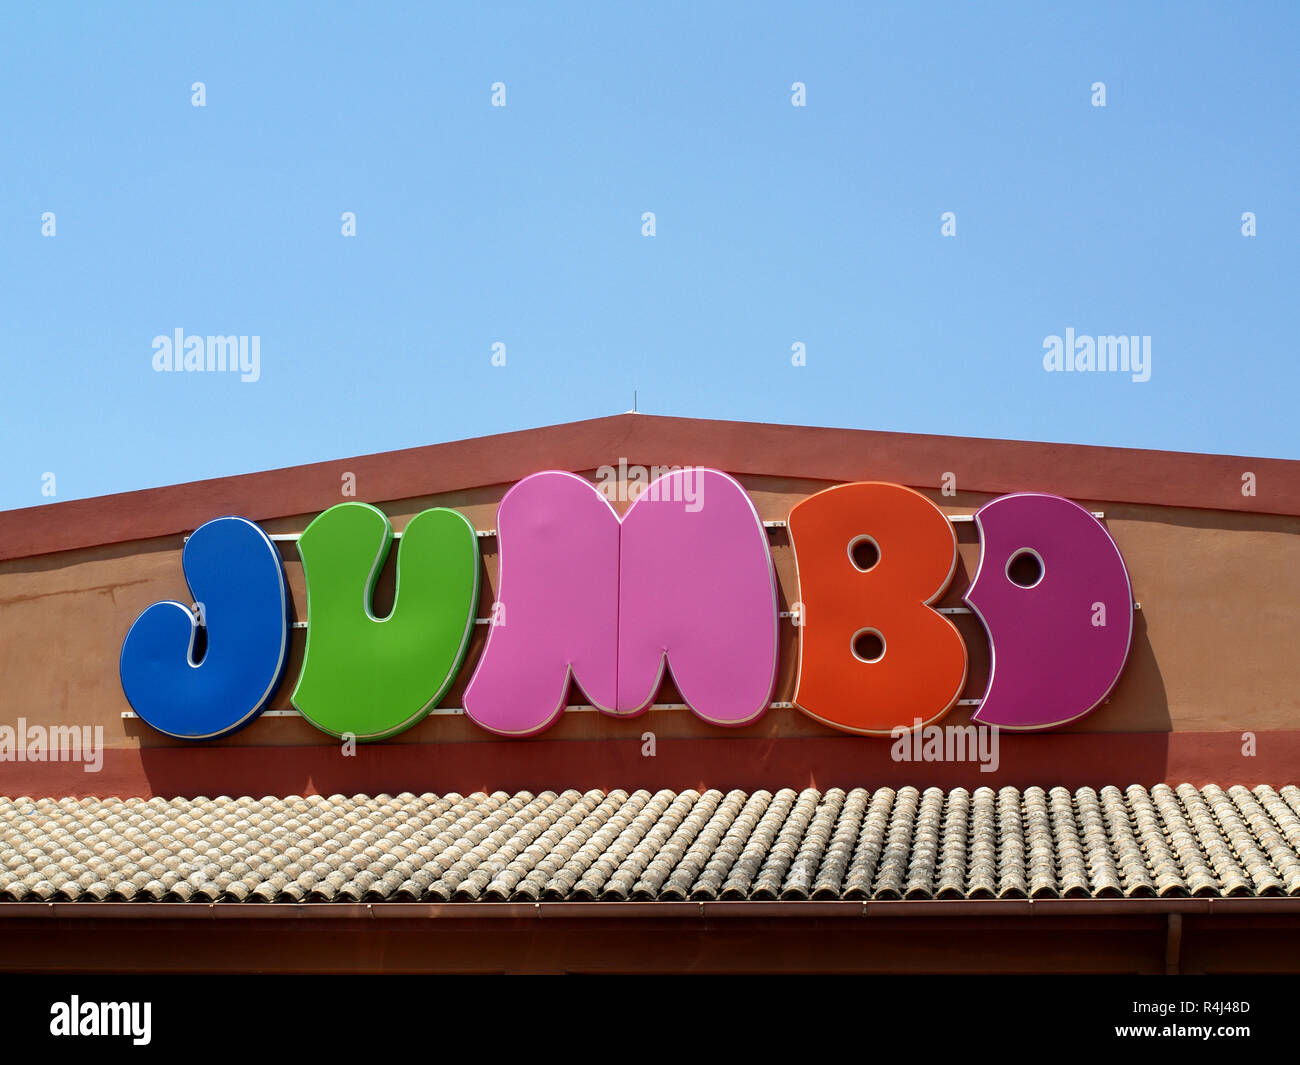 Jumbo Stores in Corfu Town, Kerkyra, Greece Stock Photo - Alamy